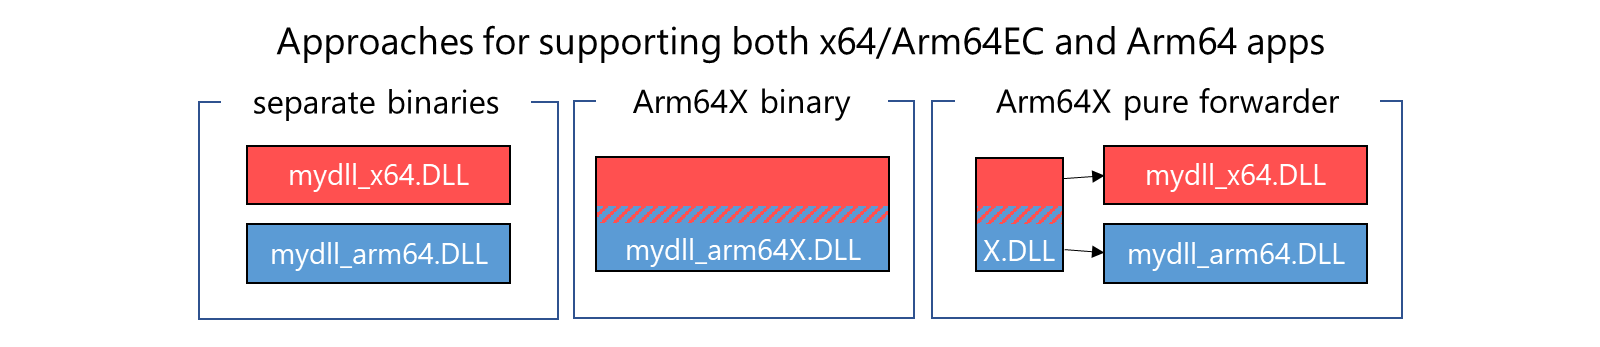 Три подхода для поддержки отдельных двоичных файлов приложений, двоичных файлов Arm64x, arm64X pure forwarder, объединенных x64/Arm64EC с двоичными файлами Arm64